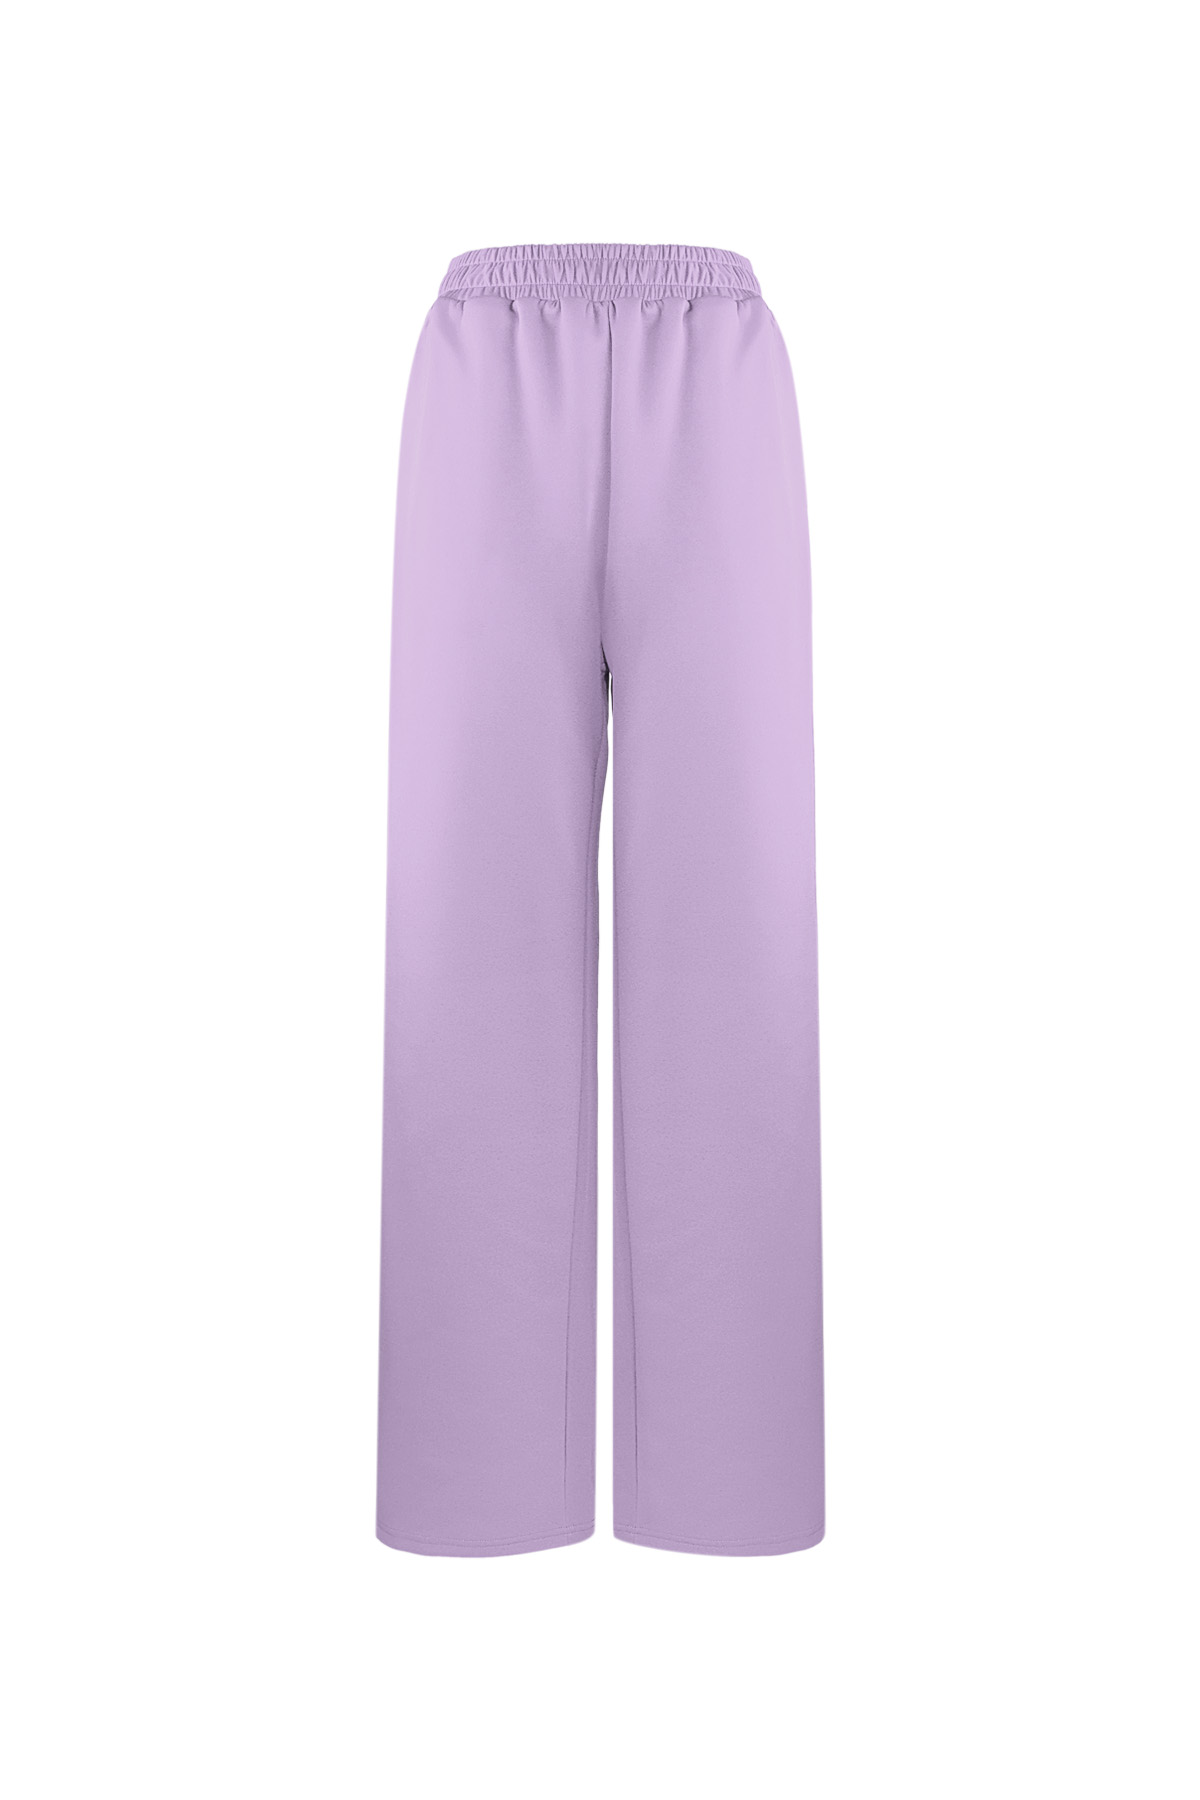 Pantalón imprescindible a rayas - violeta S 